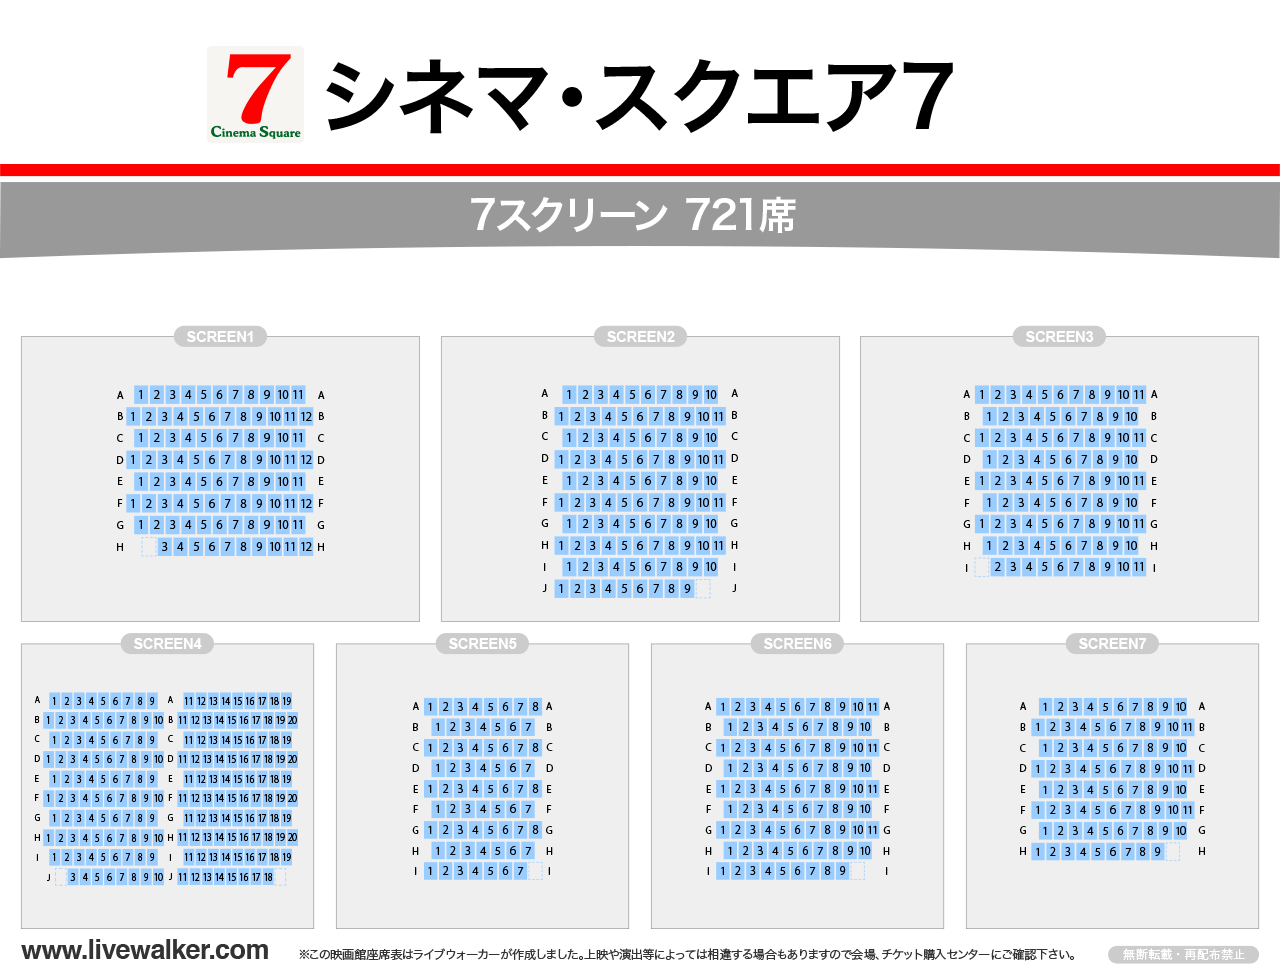 シネマ・スクエア7スクリーンの座席表